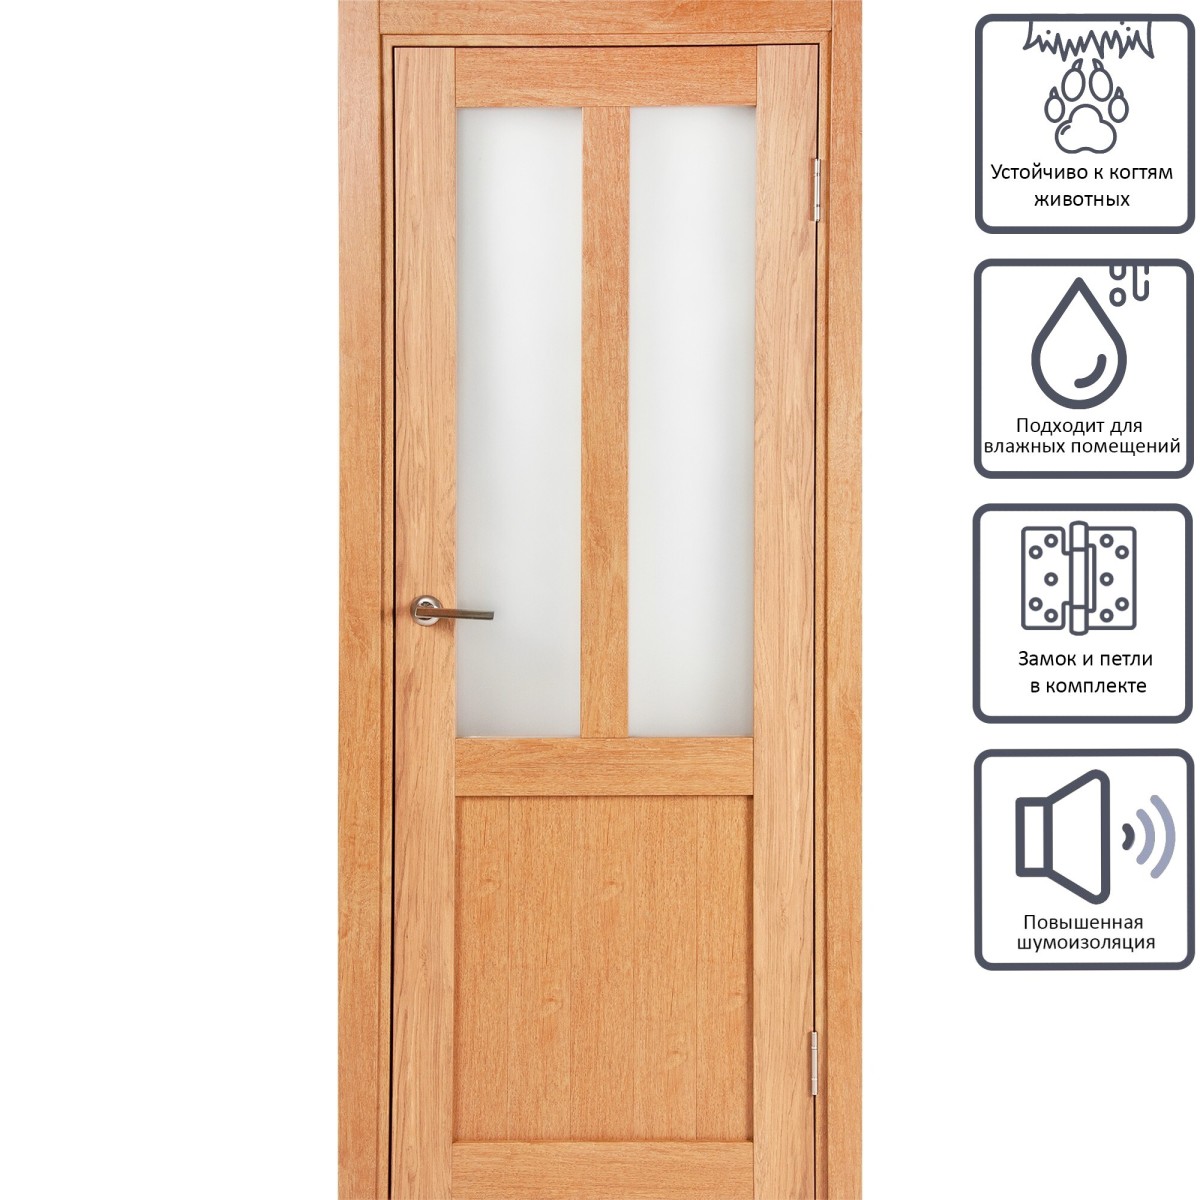 Дверь межкомнатная остеклённая Кантри 80x200 см, ПВХ, цвет дуб арагон, с фурнитурой